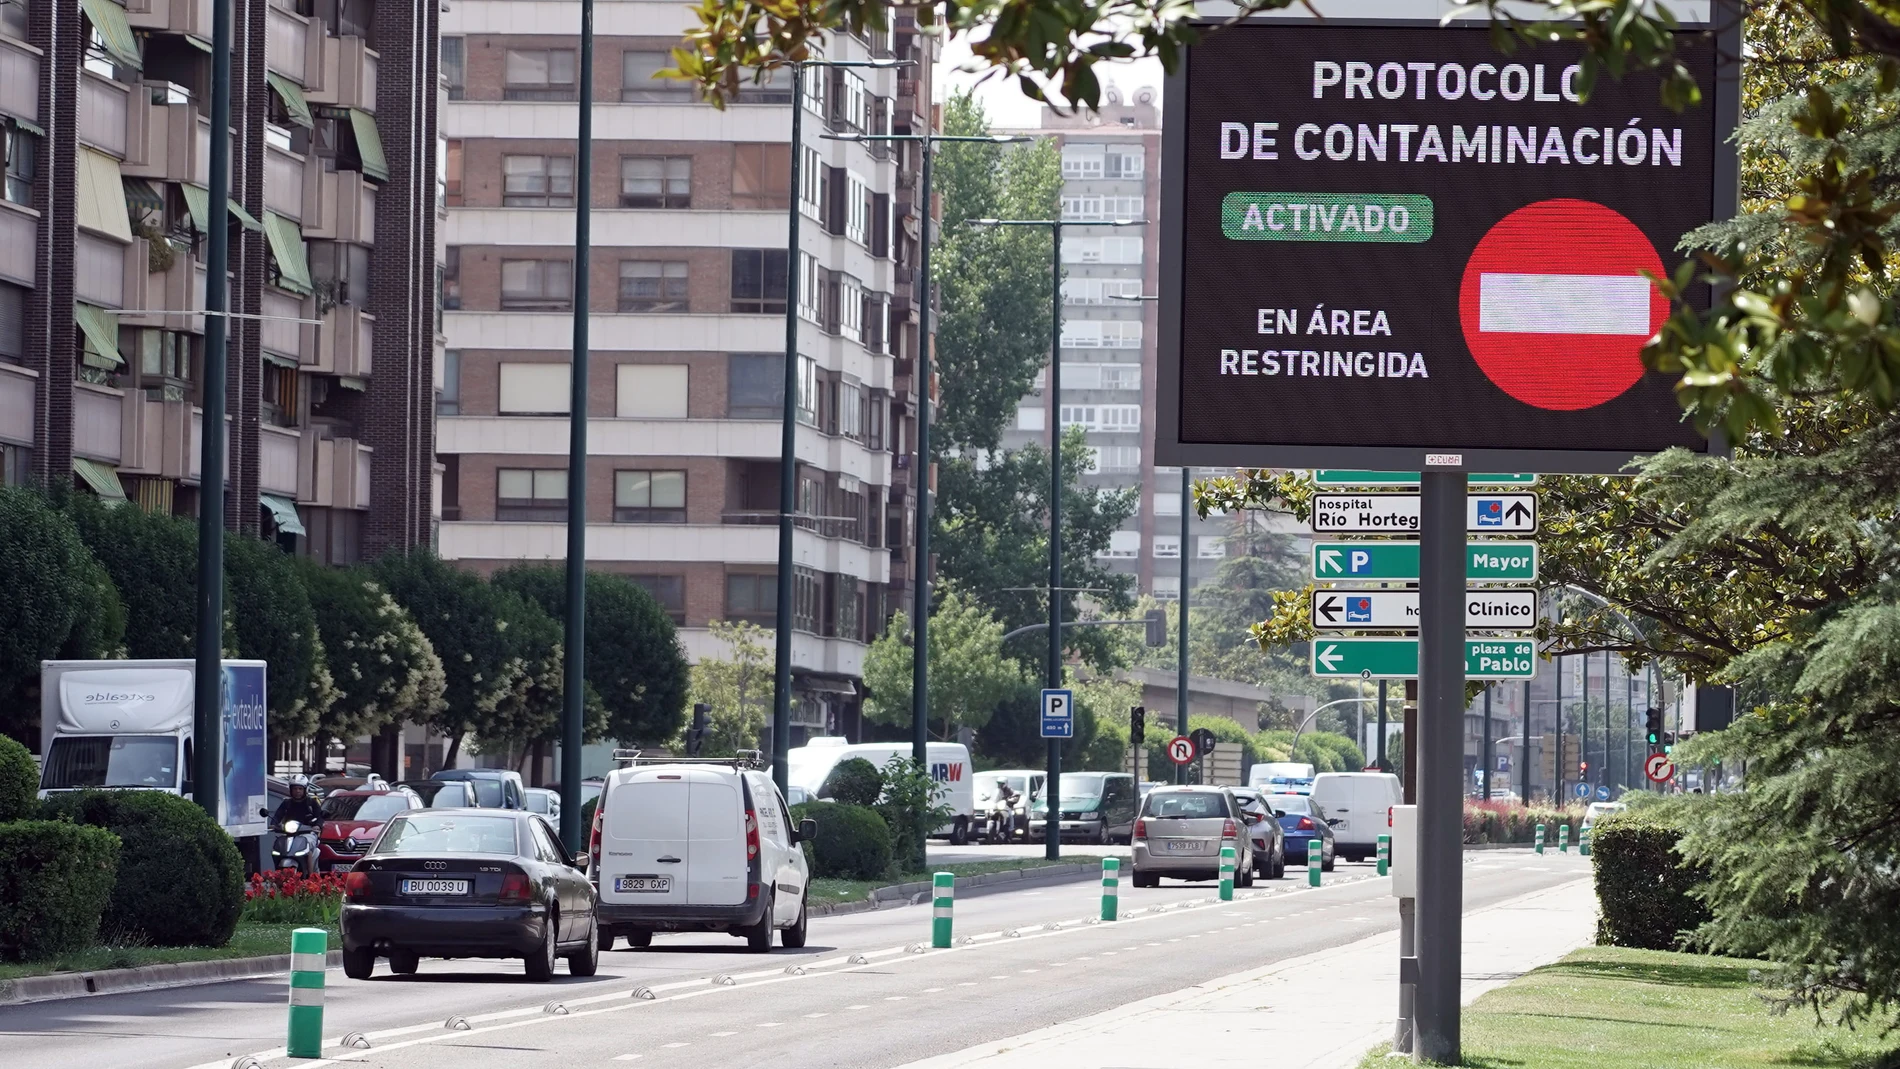 Restricciones del Ayuntamiento de Valladolid al tráfico en la 'almendra central' ante la contaminación por ozono.